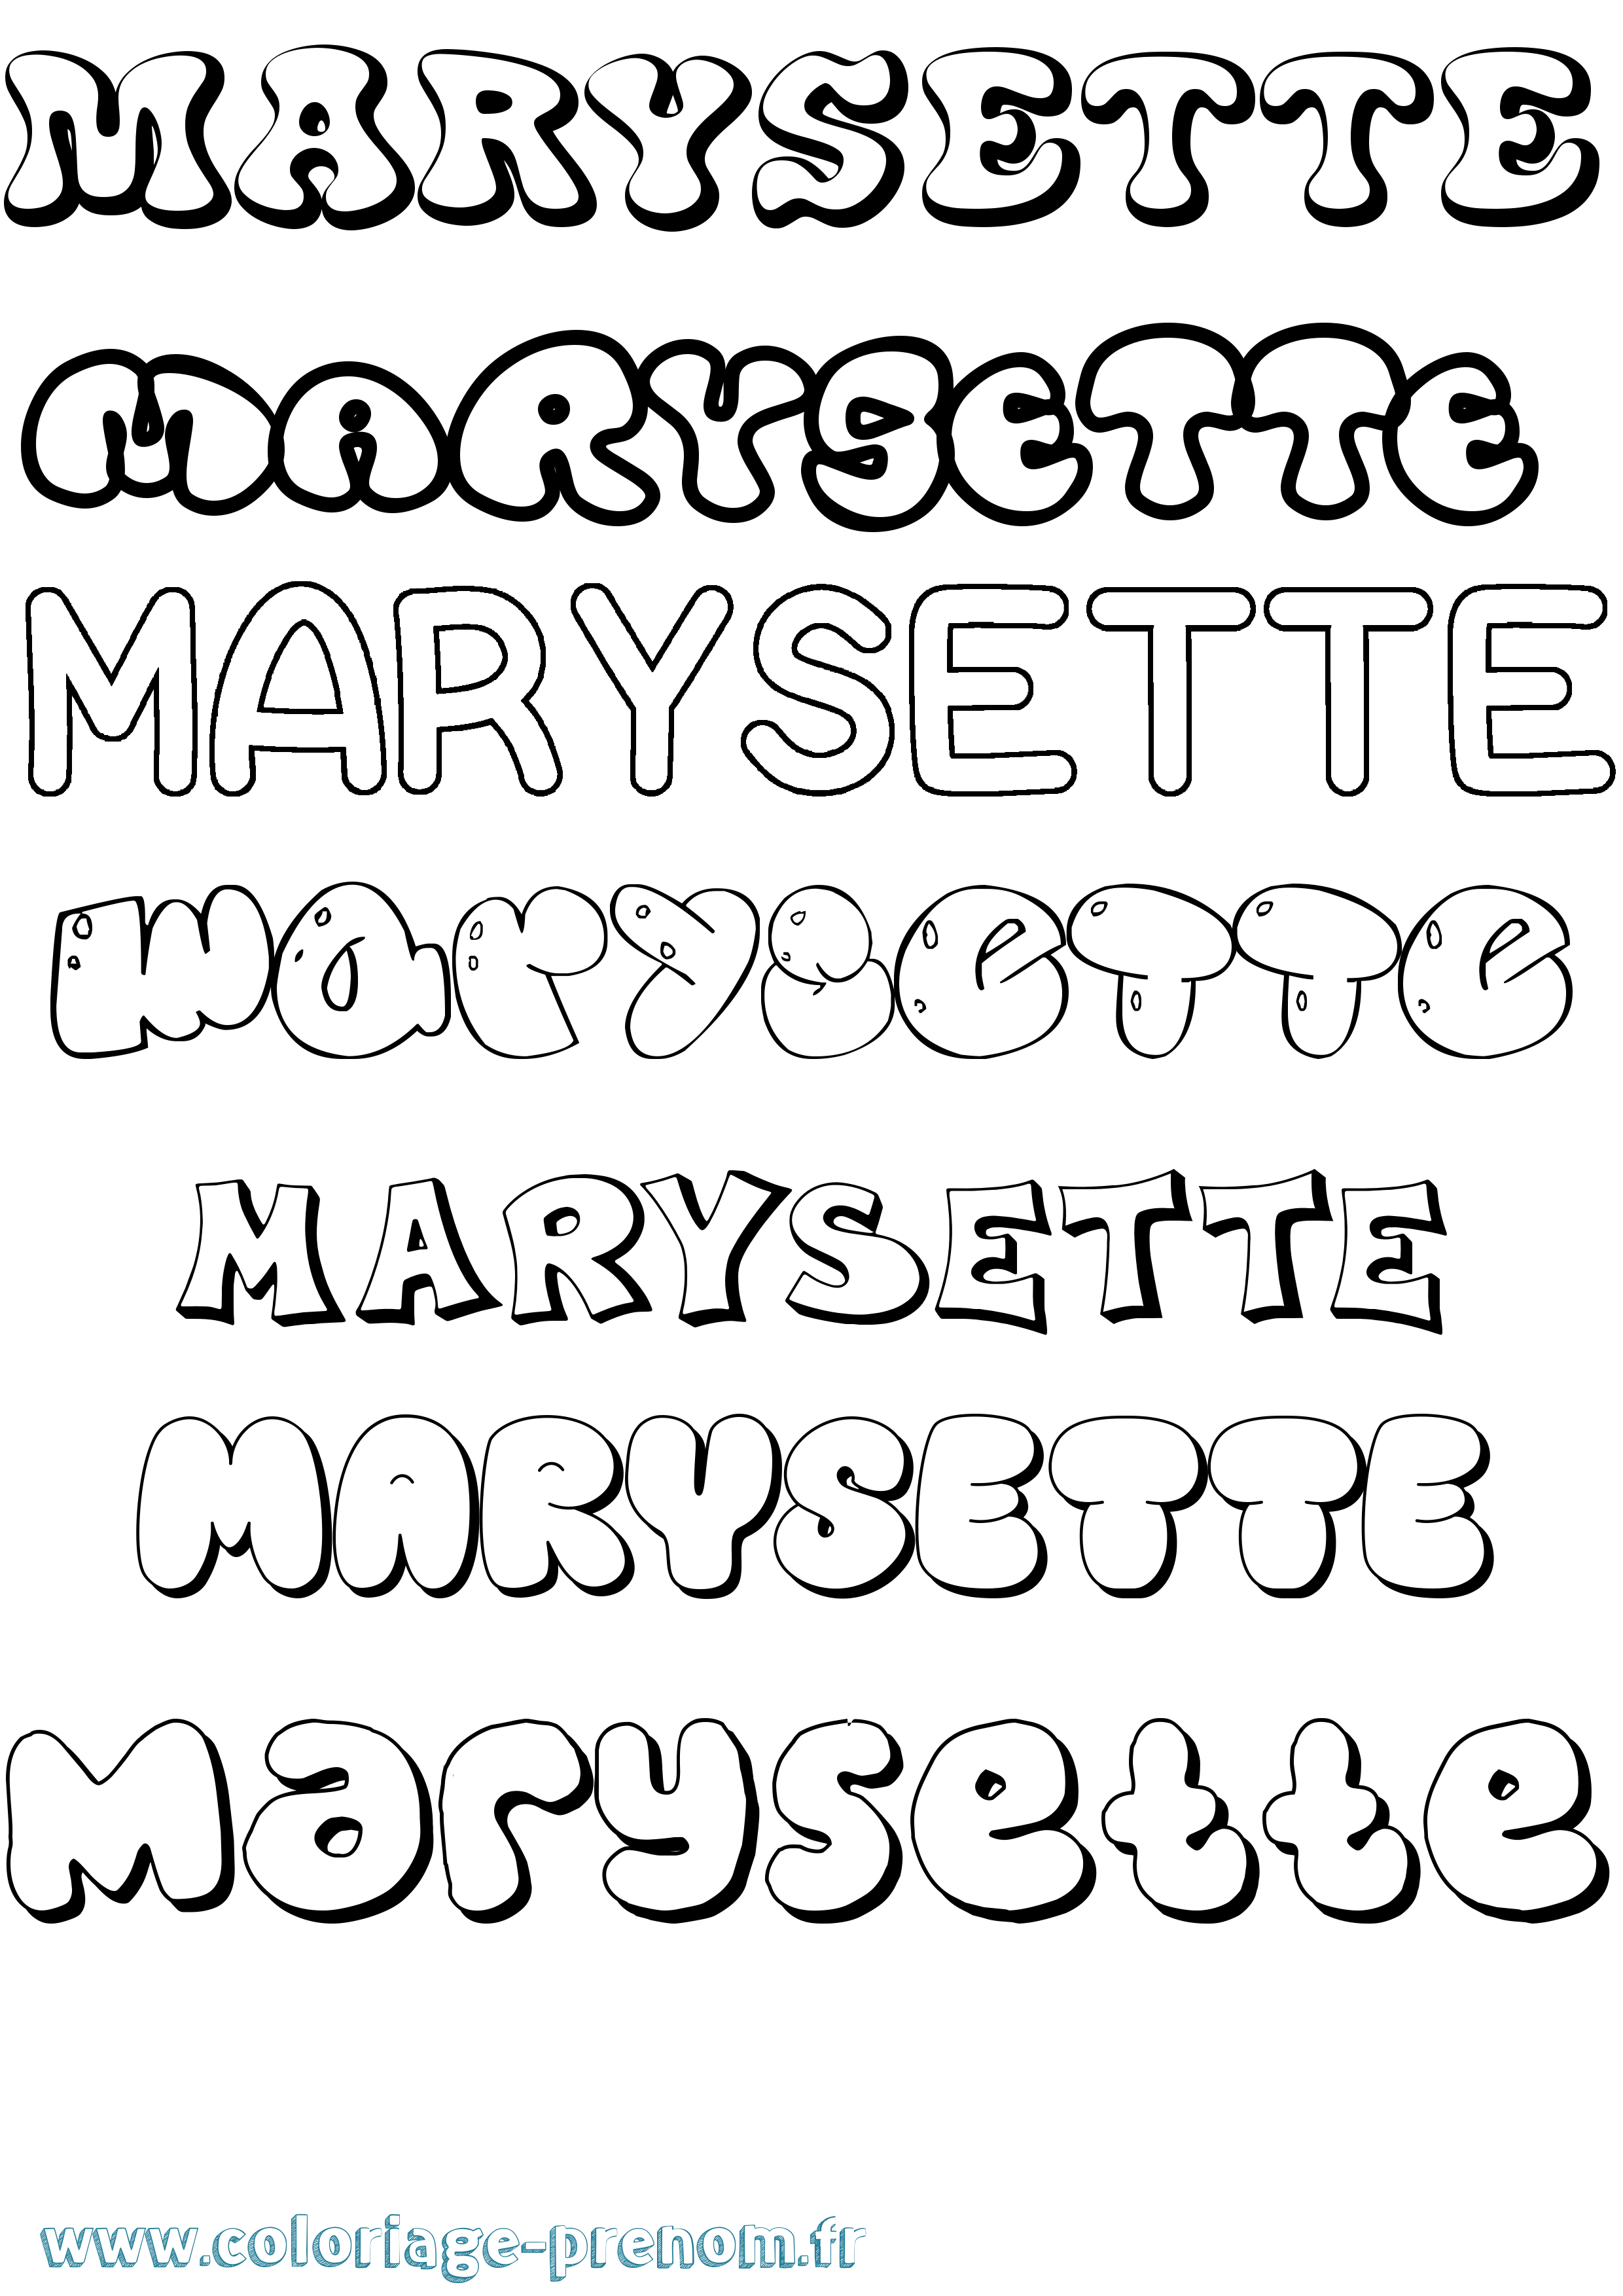 Coloriage prénom Marysette Bubble